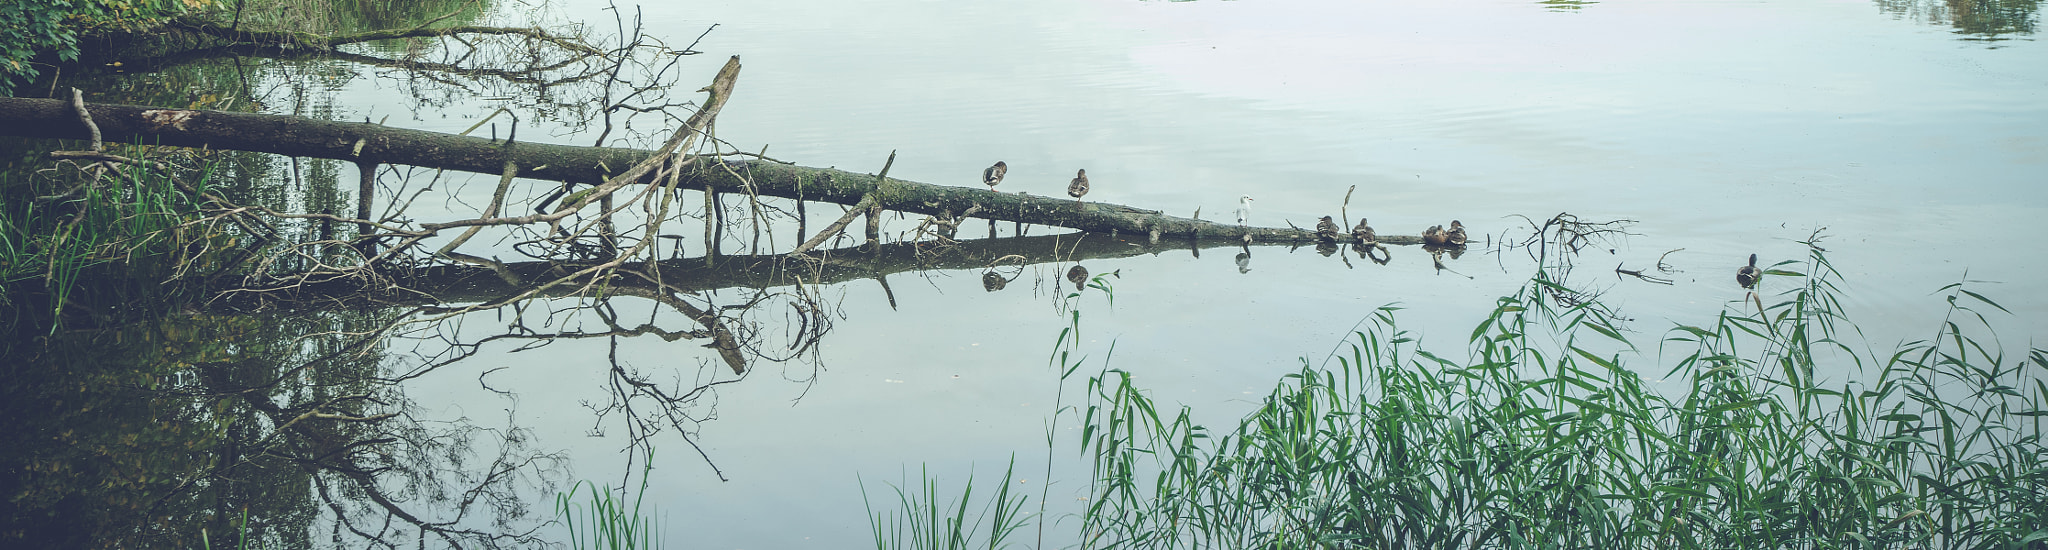 Sony a7R sample photo. Birds on a row on a fallen tree photography